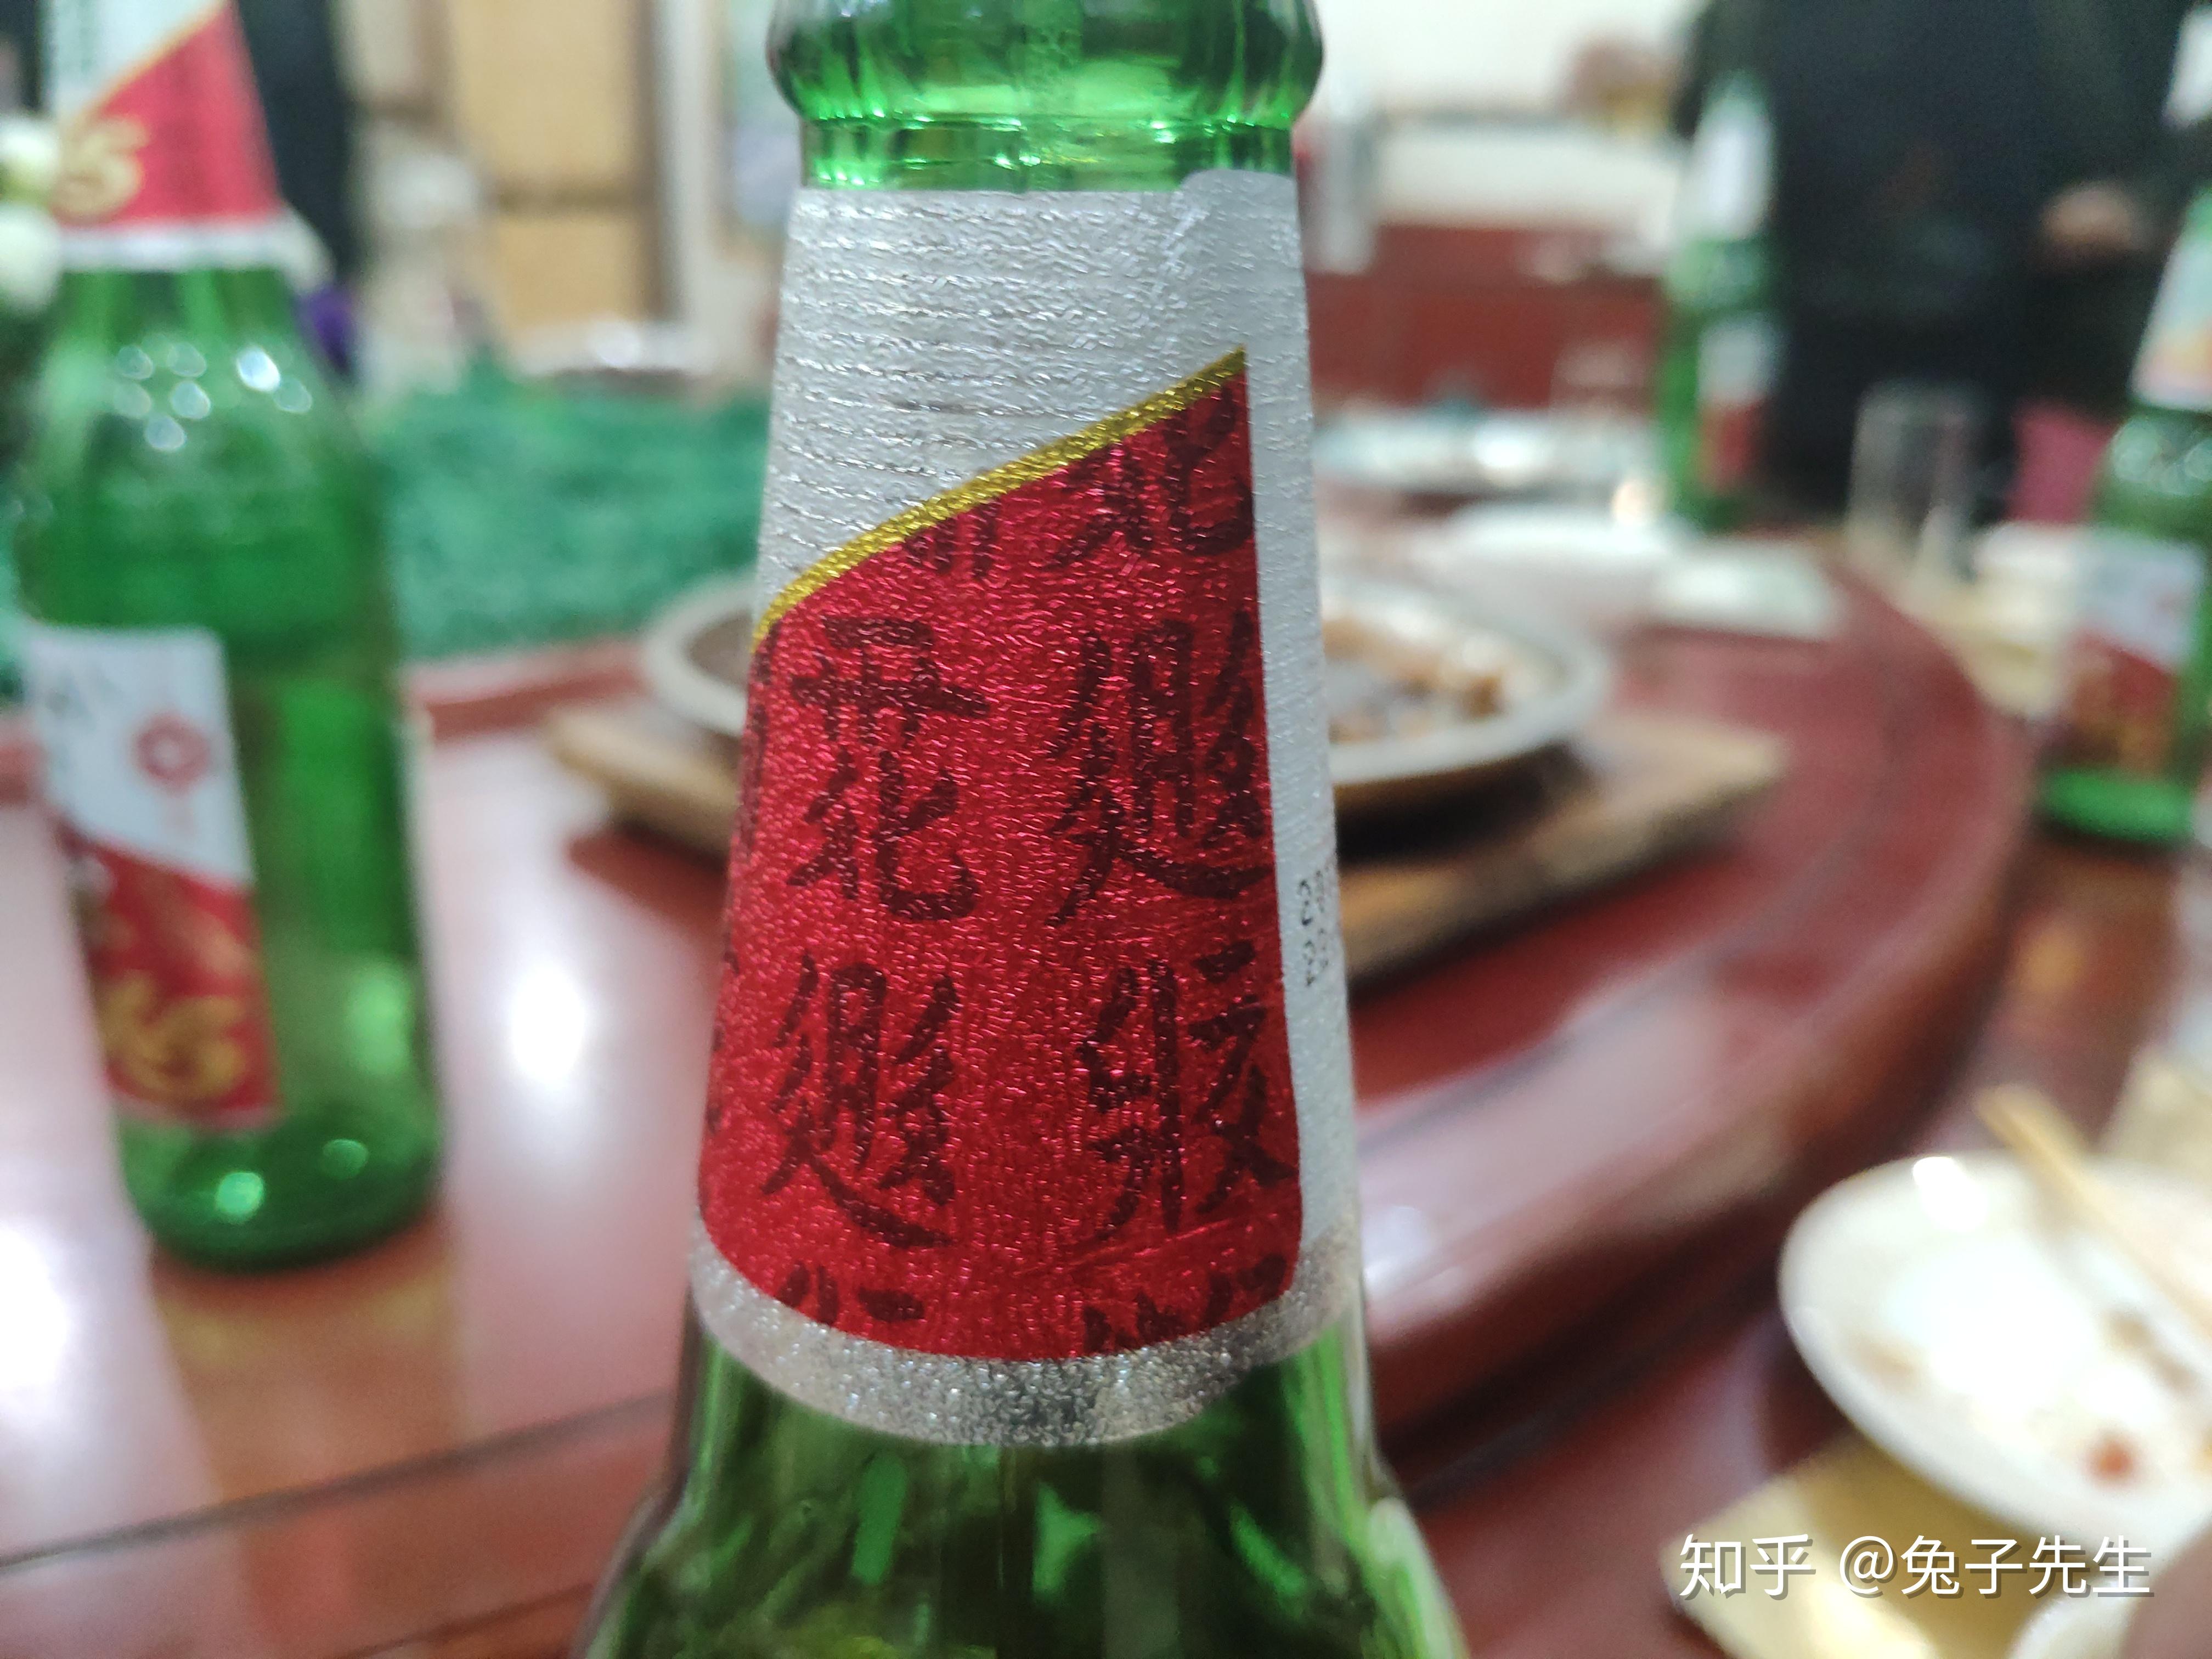 X5 STAR上市 西夏啤酒再添新星-宁夏新闻网